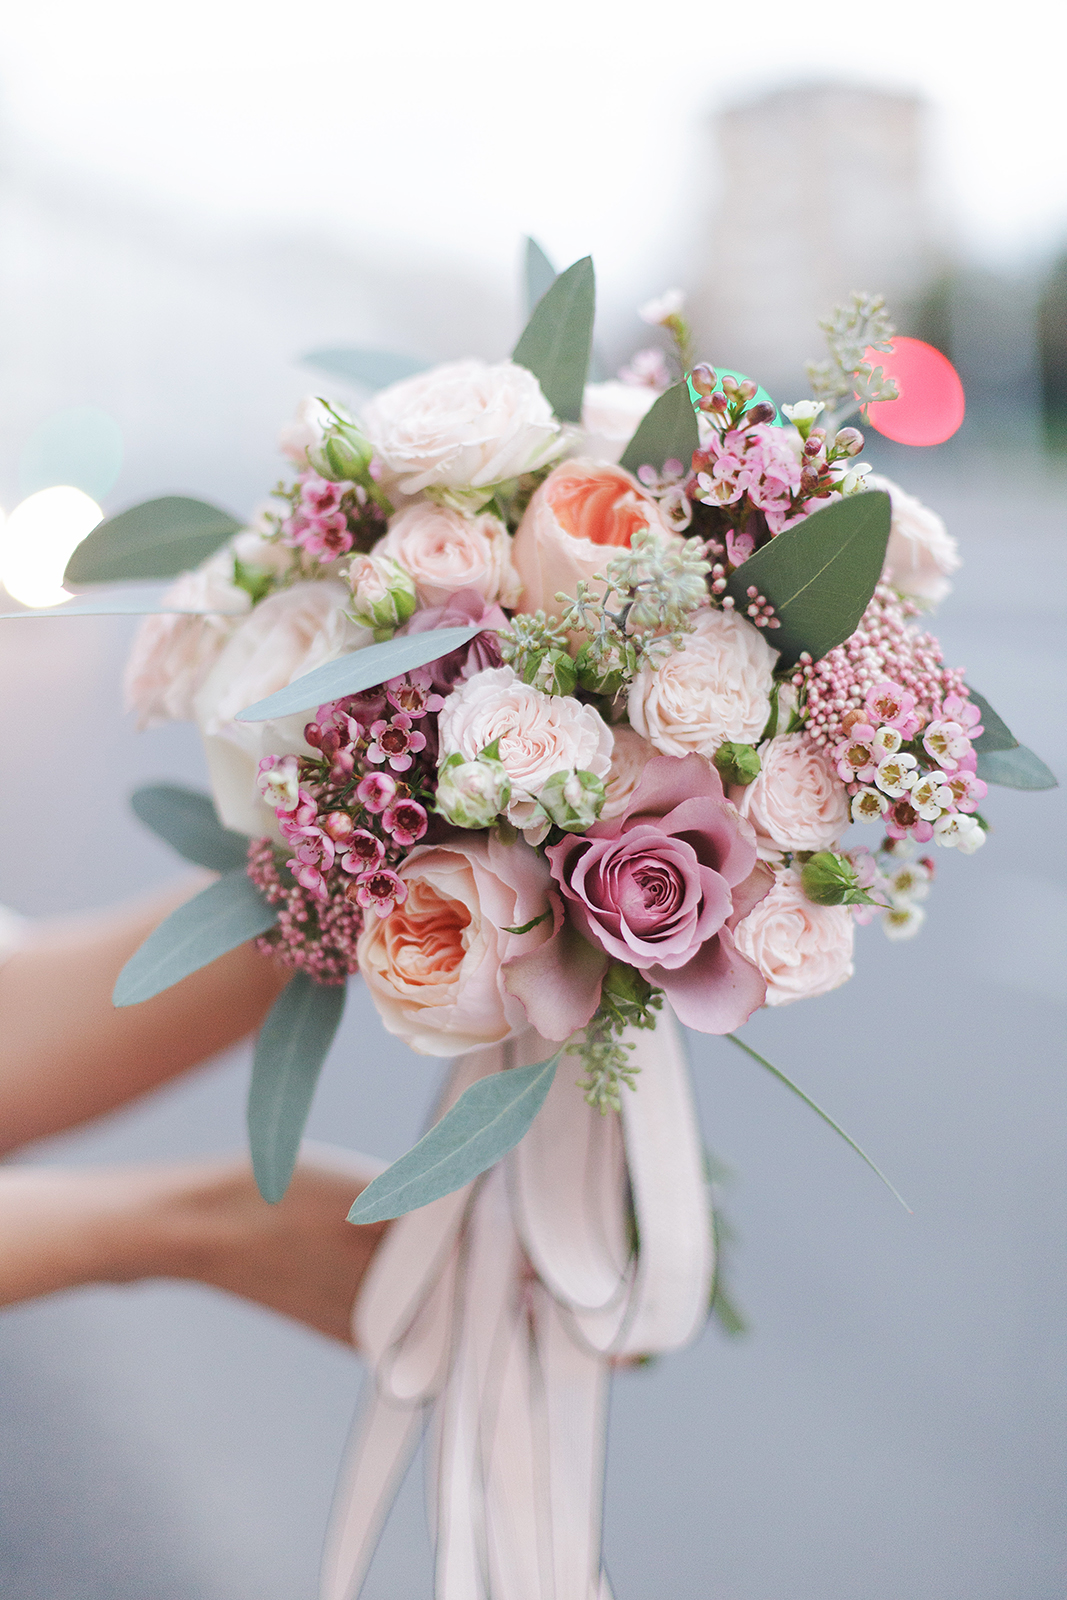 Мастер-класс изготовления свадебного букета невесты из живых кустовых роз